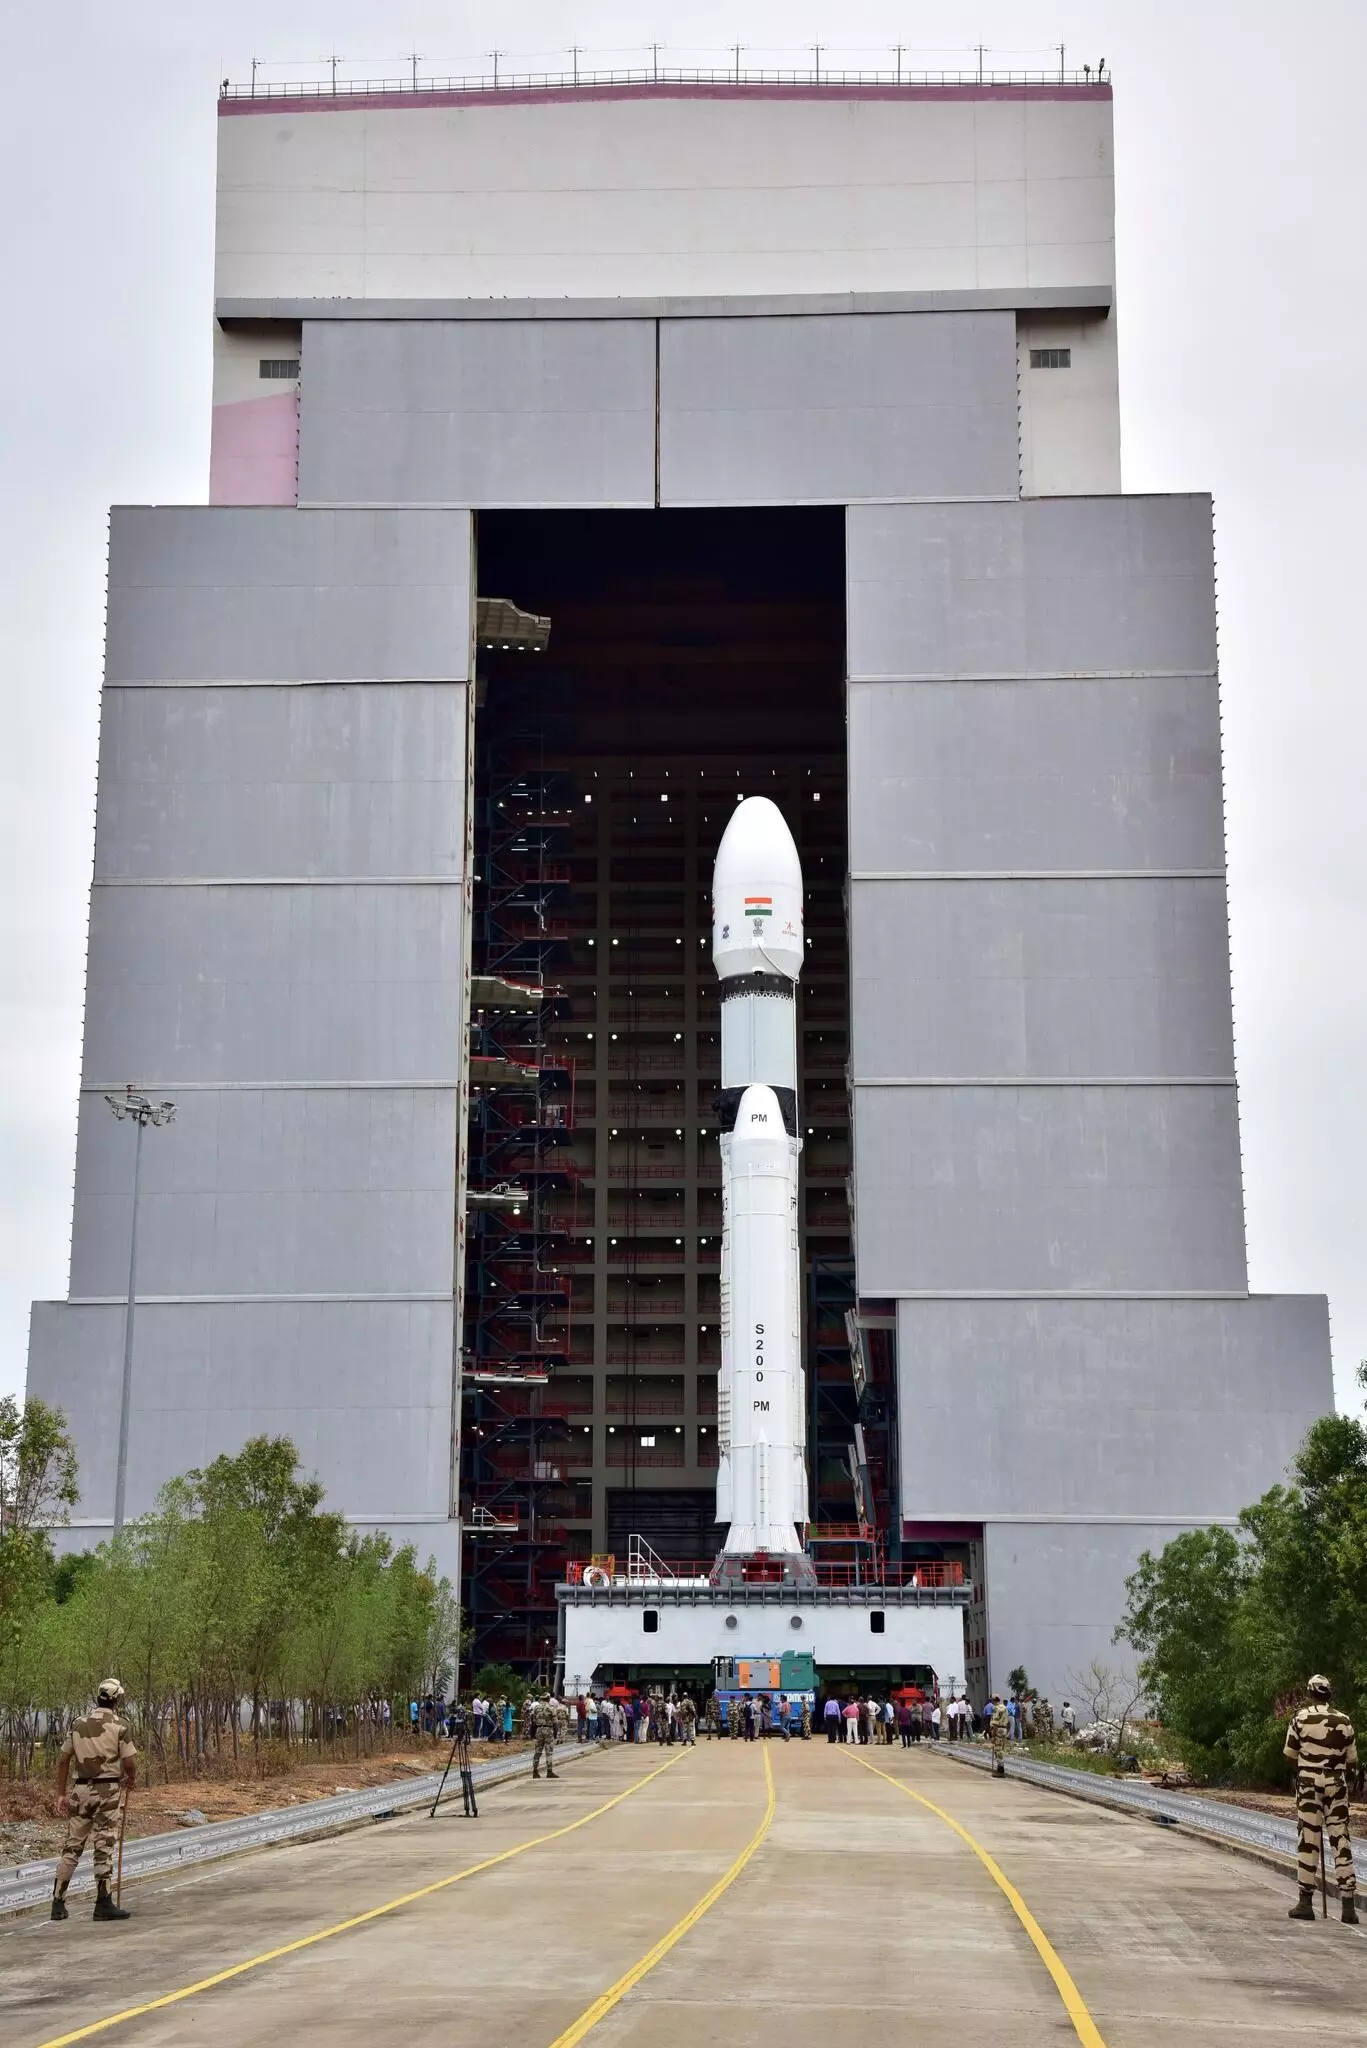 चंद्रयान-3 का प्रक्षेपण  14 जुलाई  को श्रीहरिकोटा के सतीश धवन अंतरिक्ष केंद्र से दोपहर दो बजकर 35 मिनट पर किया जाएगा